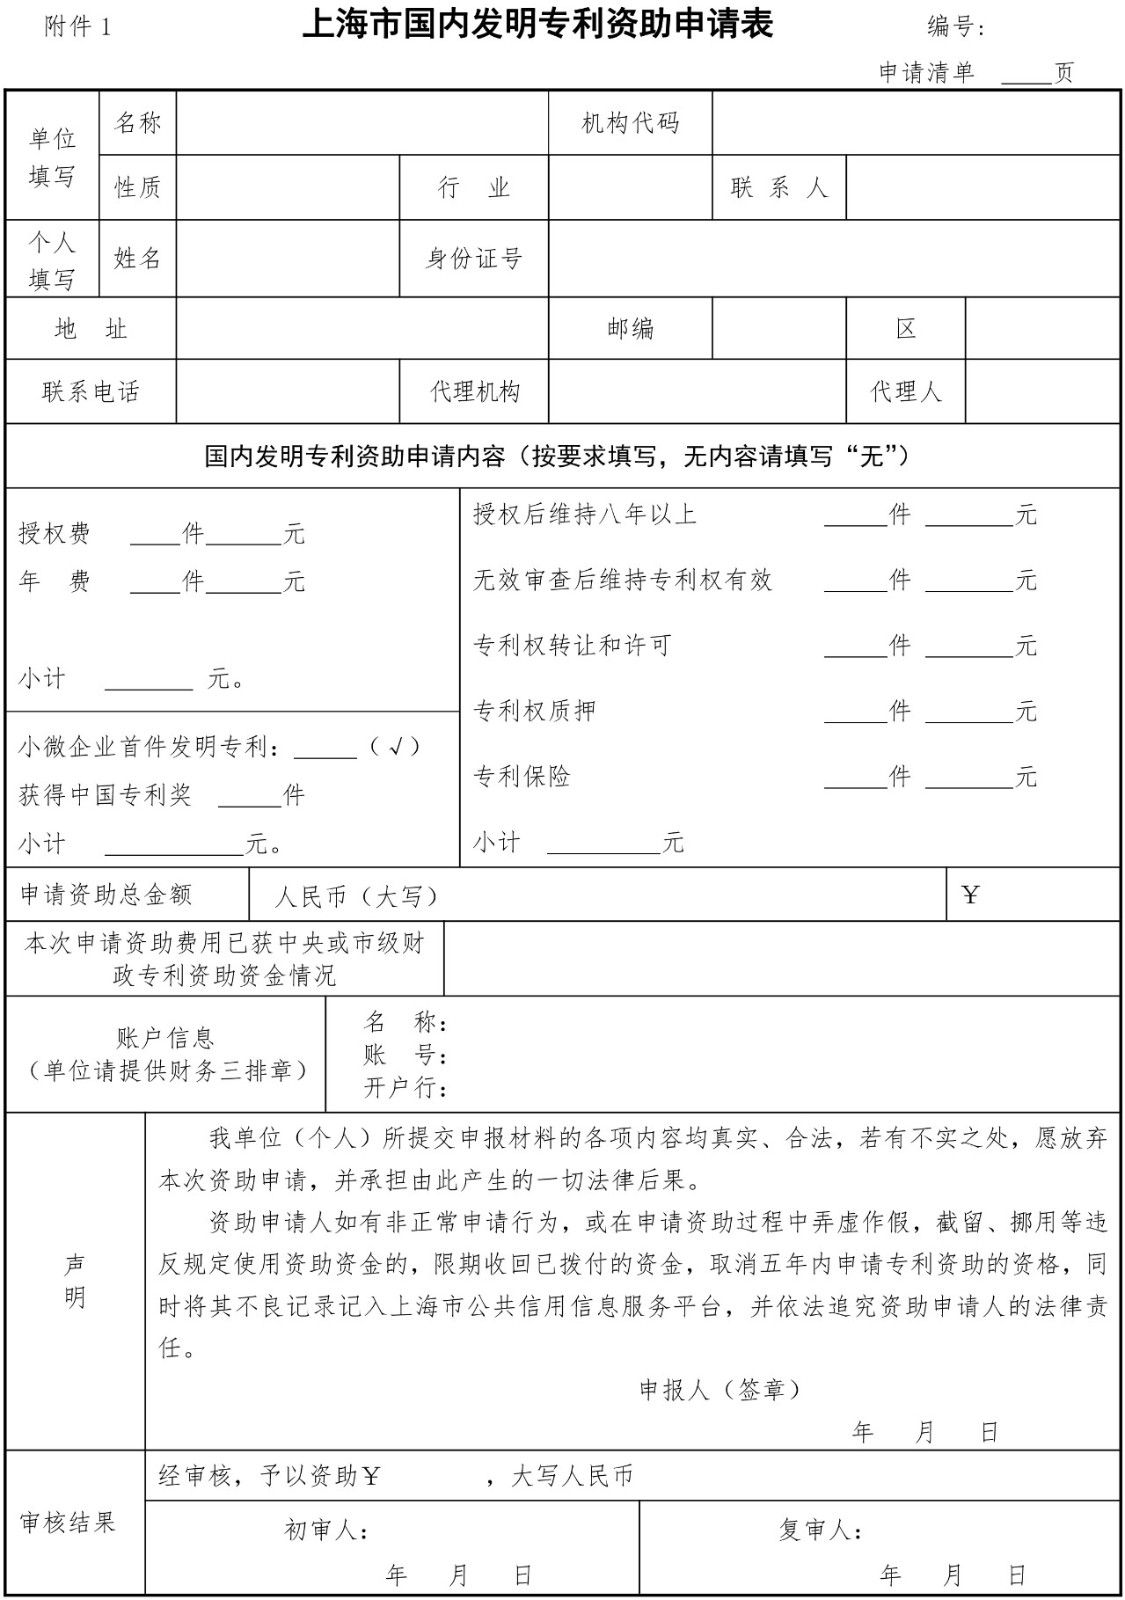 2019.7.1日起施行新《上海市专利一般资助申请指南》（全文）